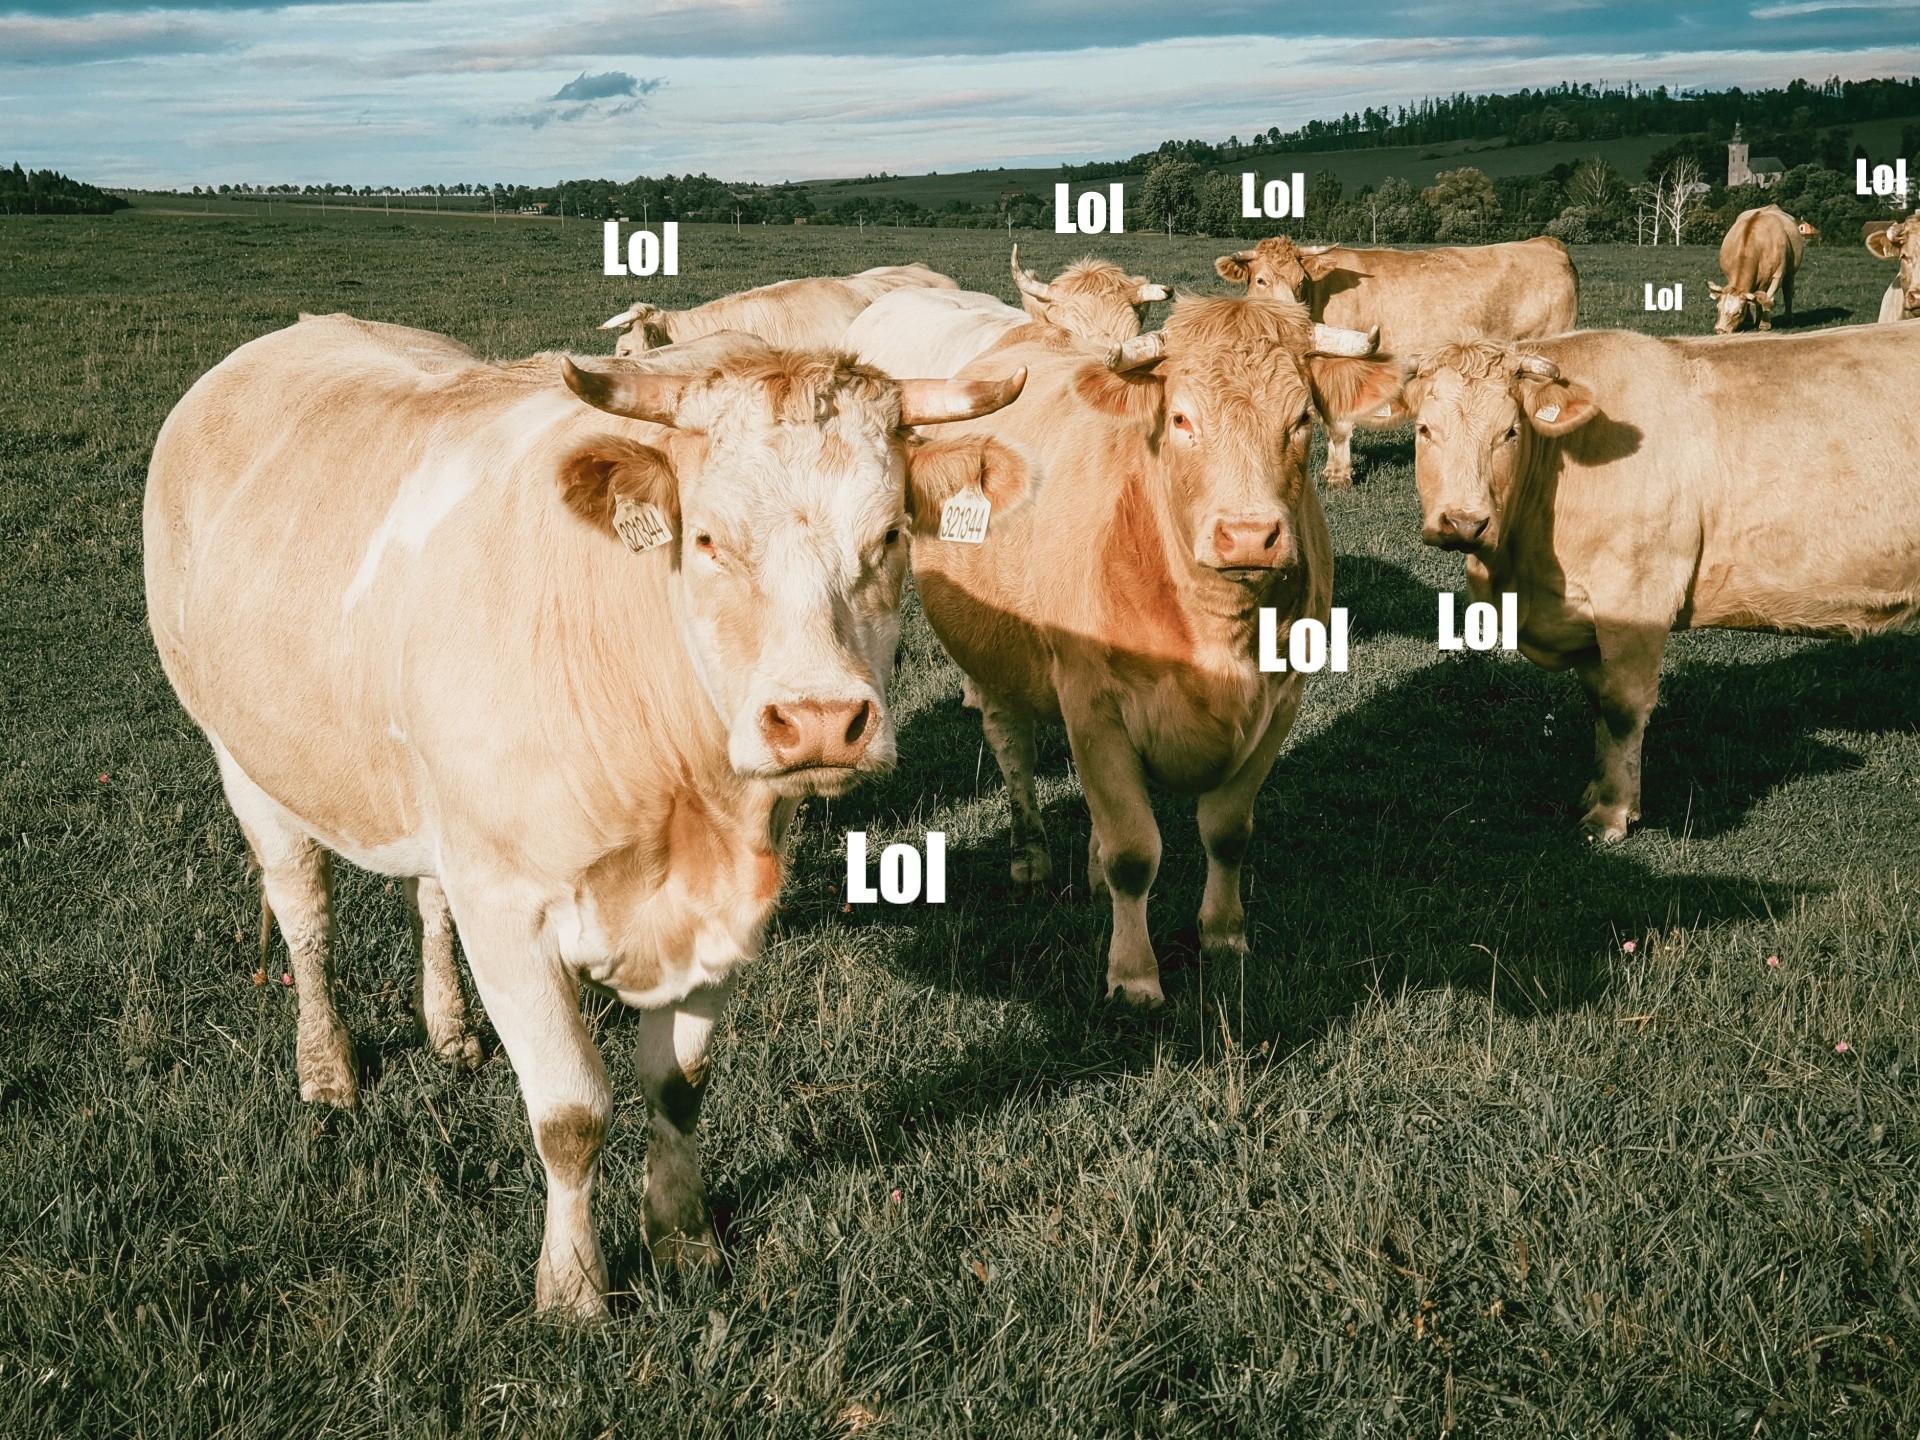 Vaches à lol : dans l'Internet qui harcèle pour s'amuser